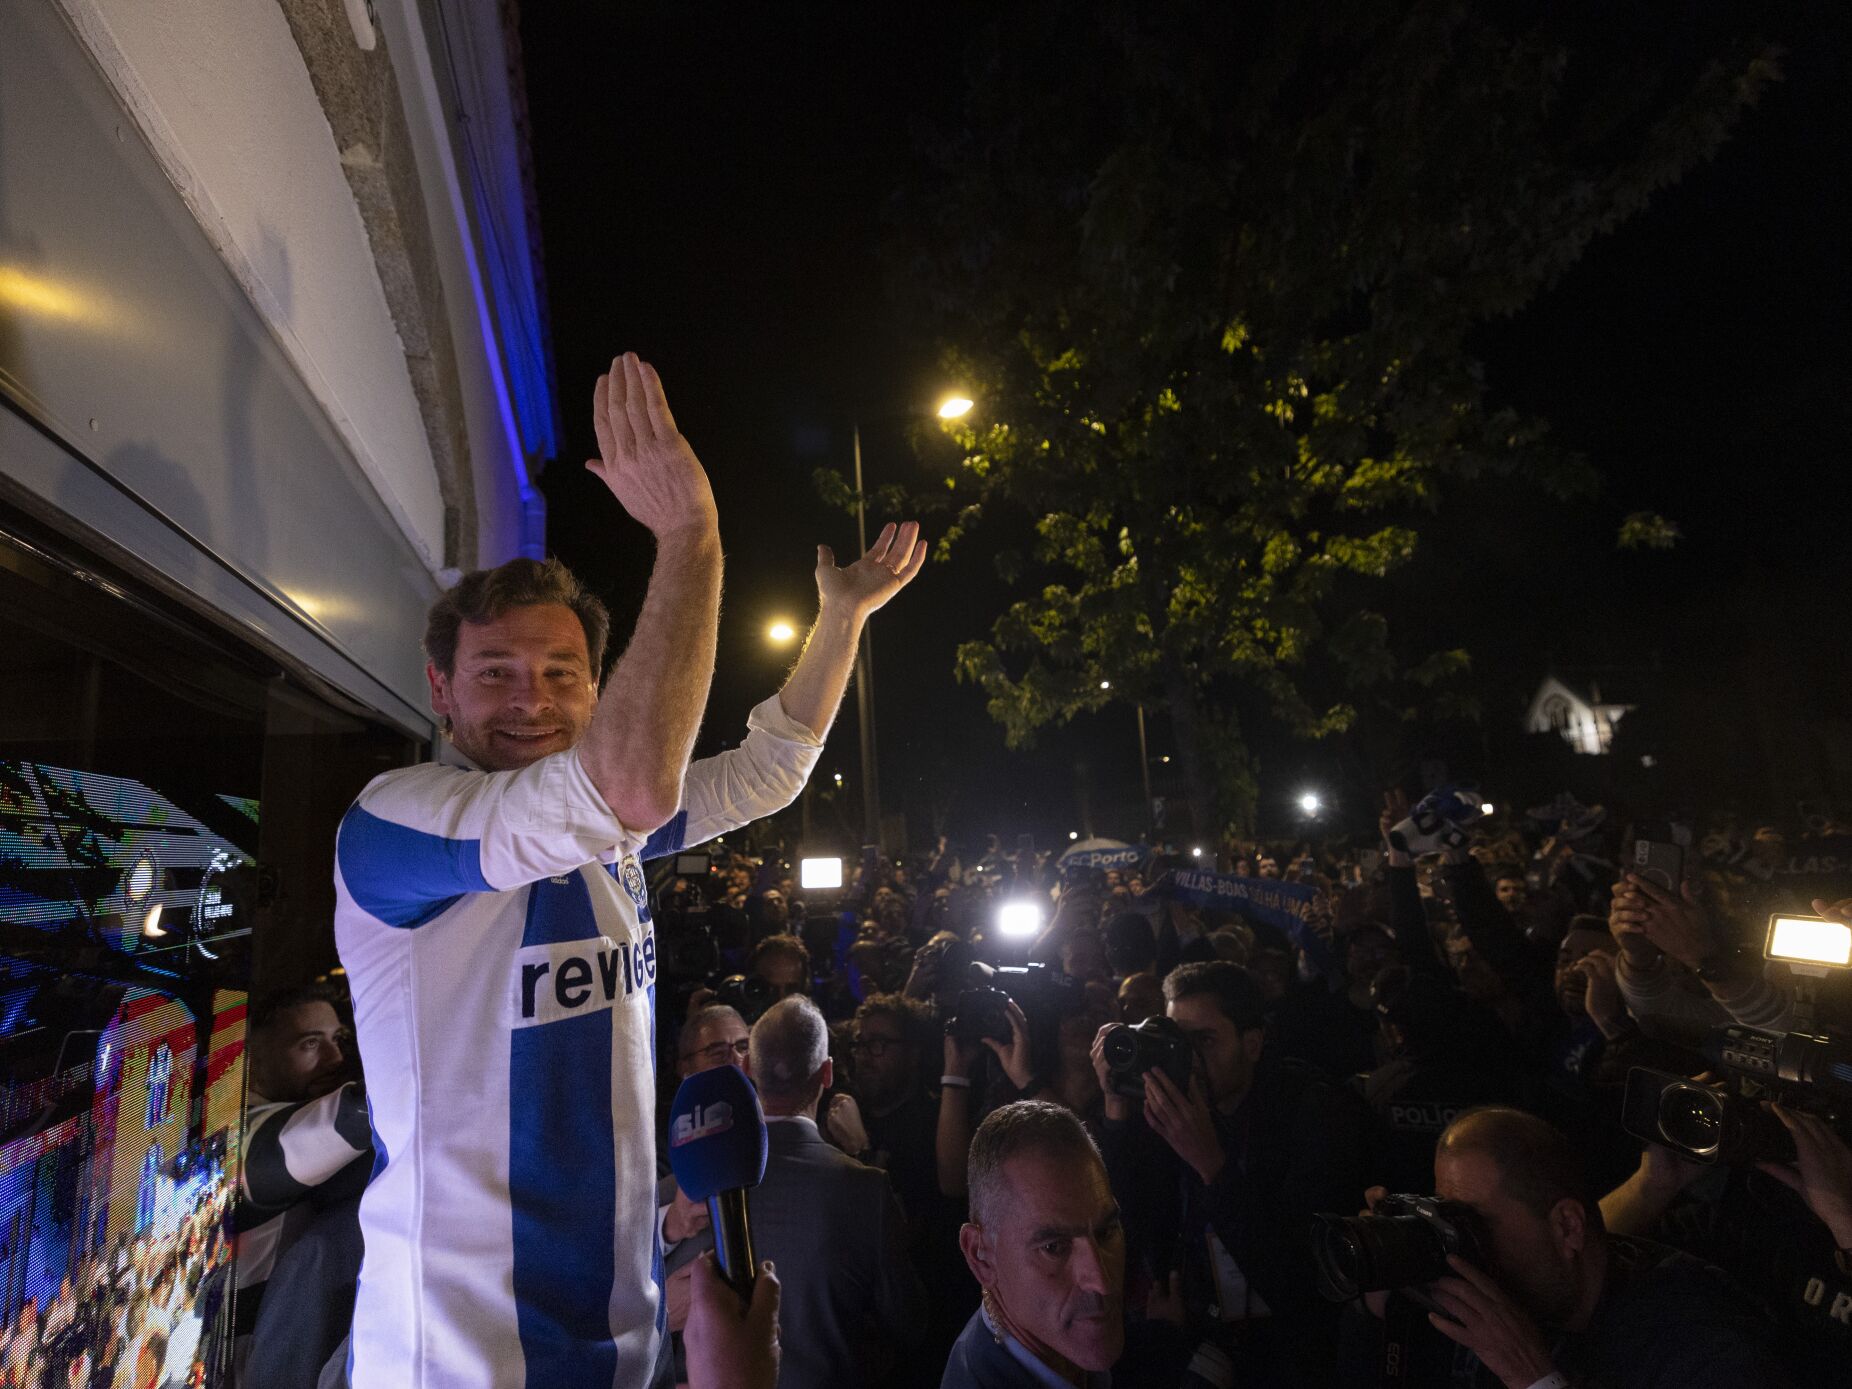 André Villas-Boas eleito com 80% dos votos: "O FC Porto está livre de novo"